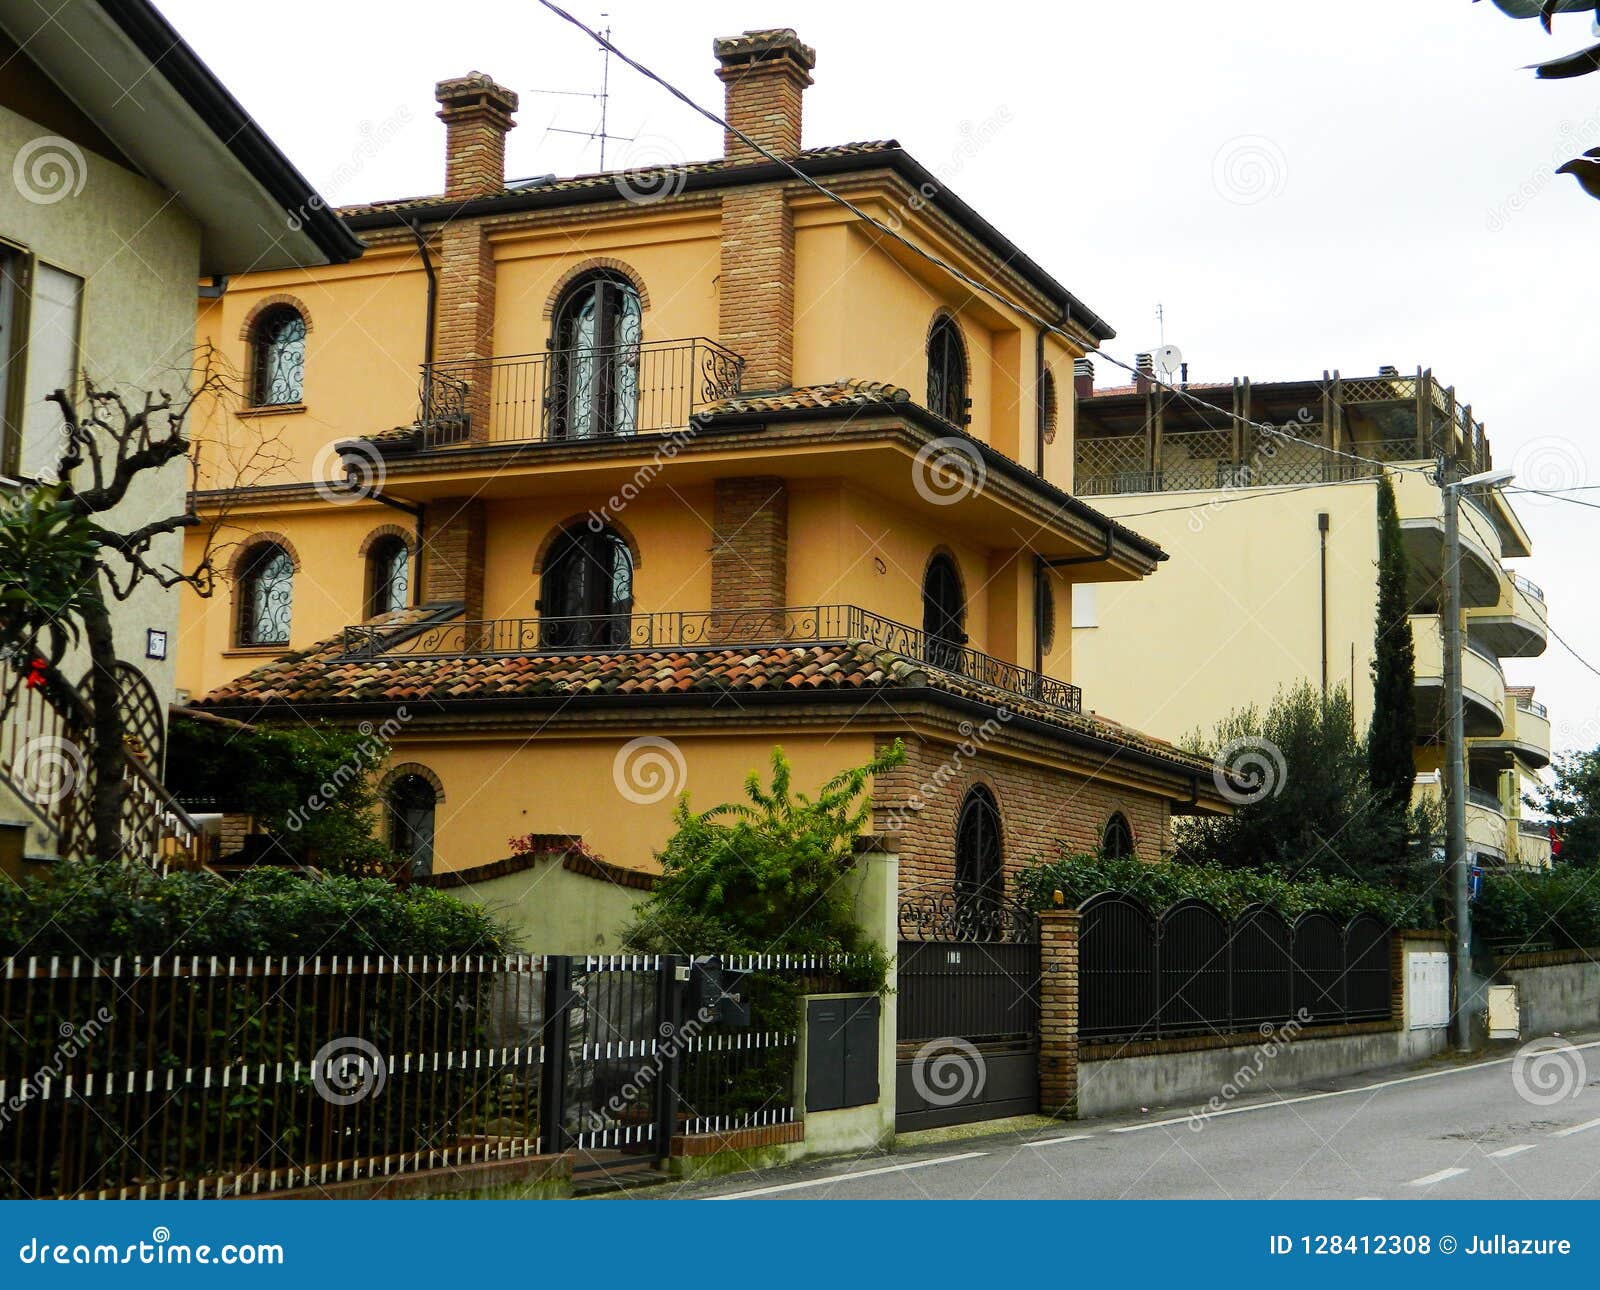 Красивые дома в италии фото купить дома в америке